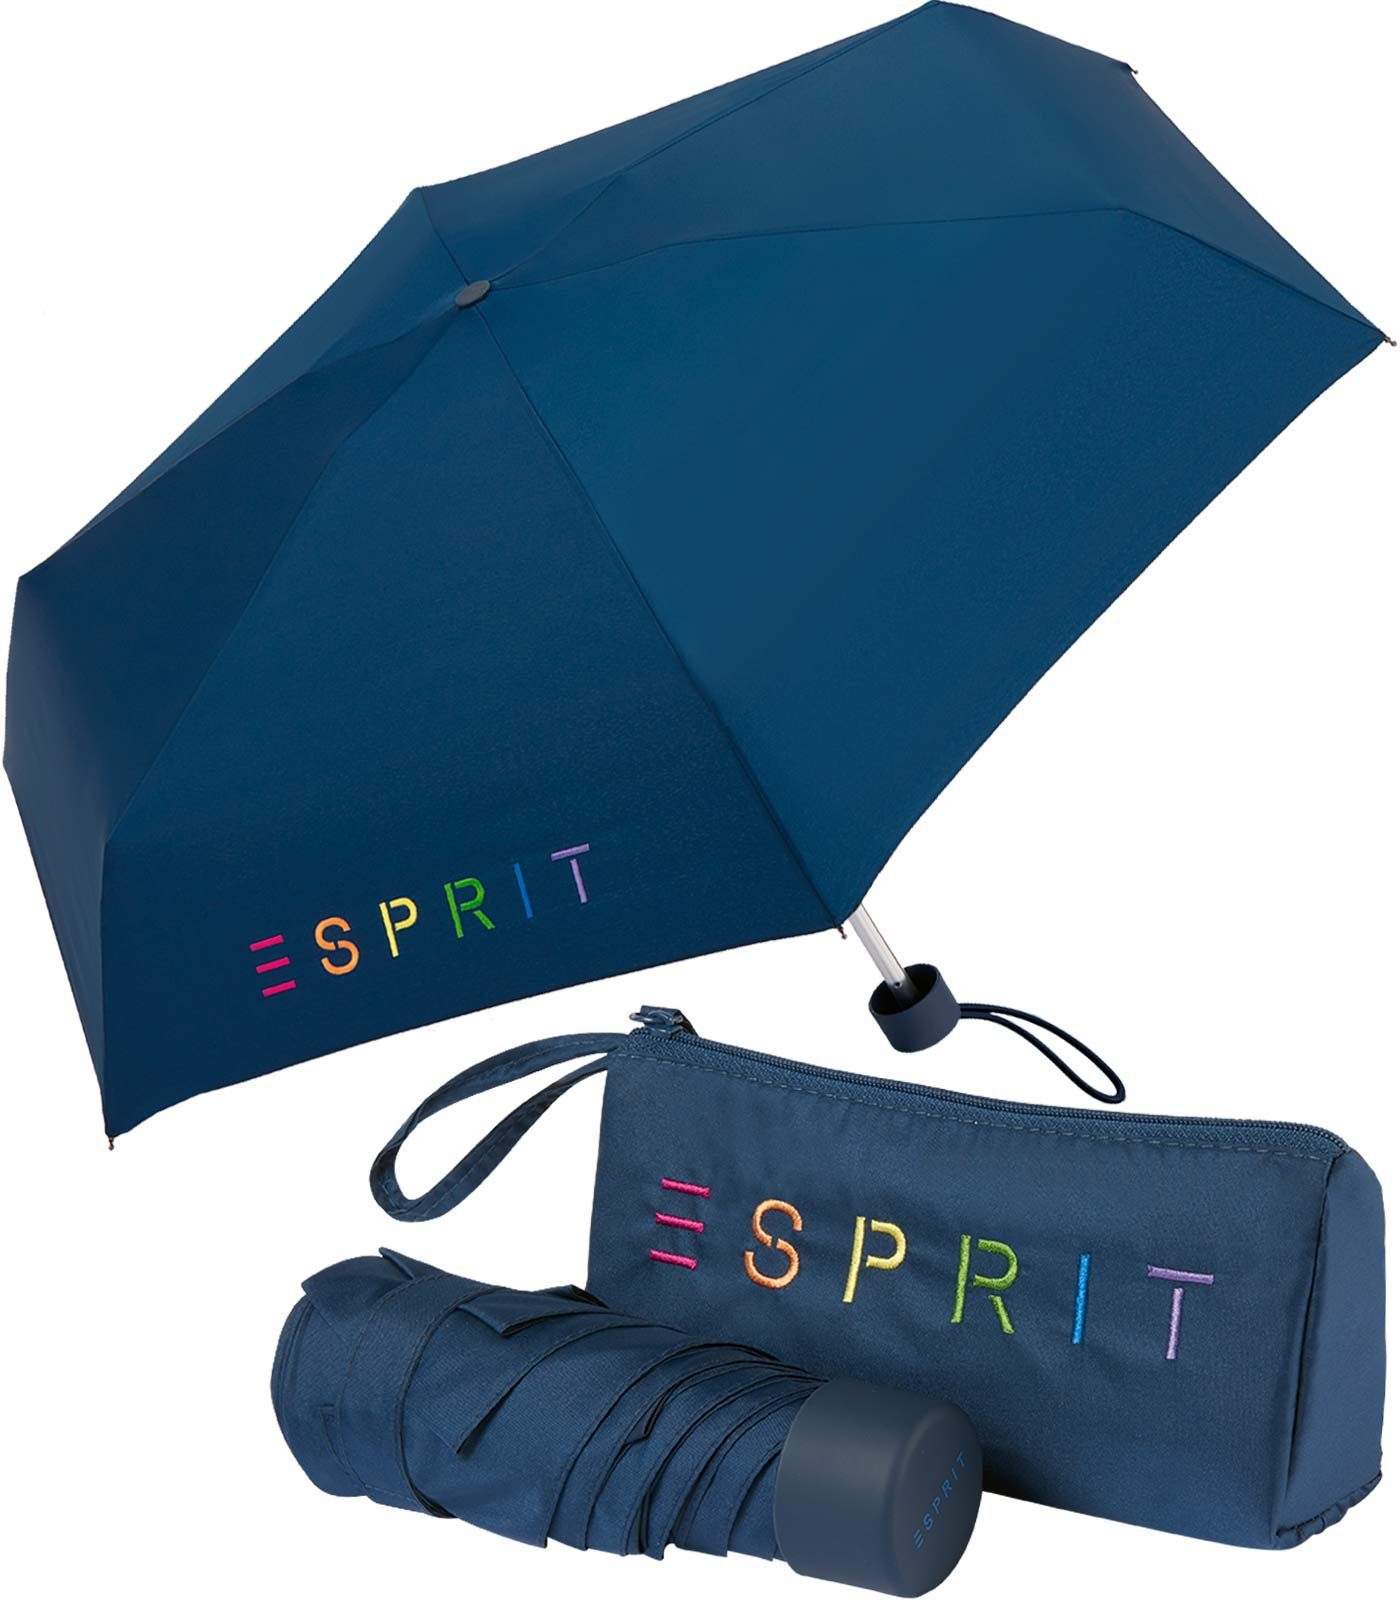 Esprit Taschenregenschirm Damen-Regenschirm Colorful Logo, bunt bedruckt  mit Esprit-Schriftzug, Ökologisch wasserabweisend: ohne perfluorierte  Chemikalien (PFCs) gefertigt